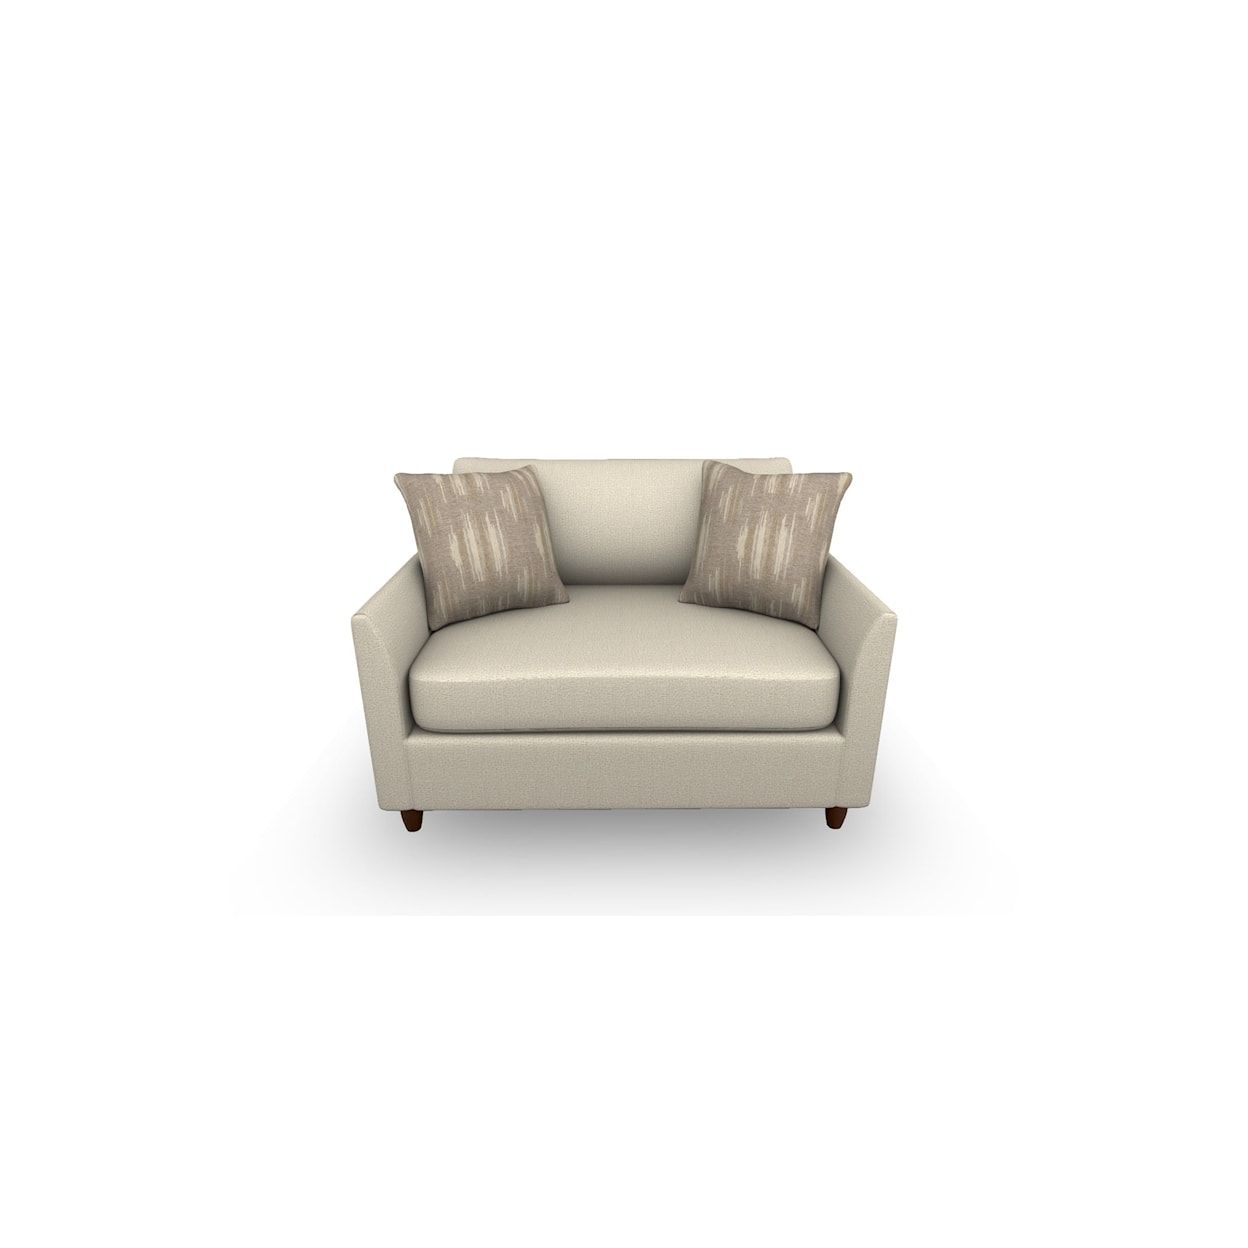 Best Home Furnishings Bayment Chair Sleeper w/Full Memory Foam Sleeper